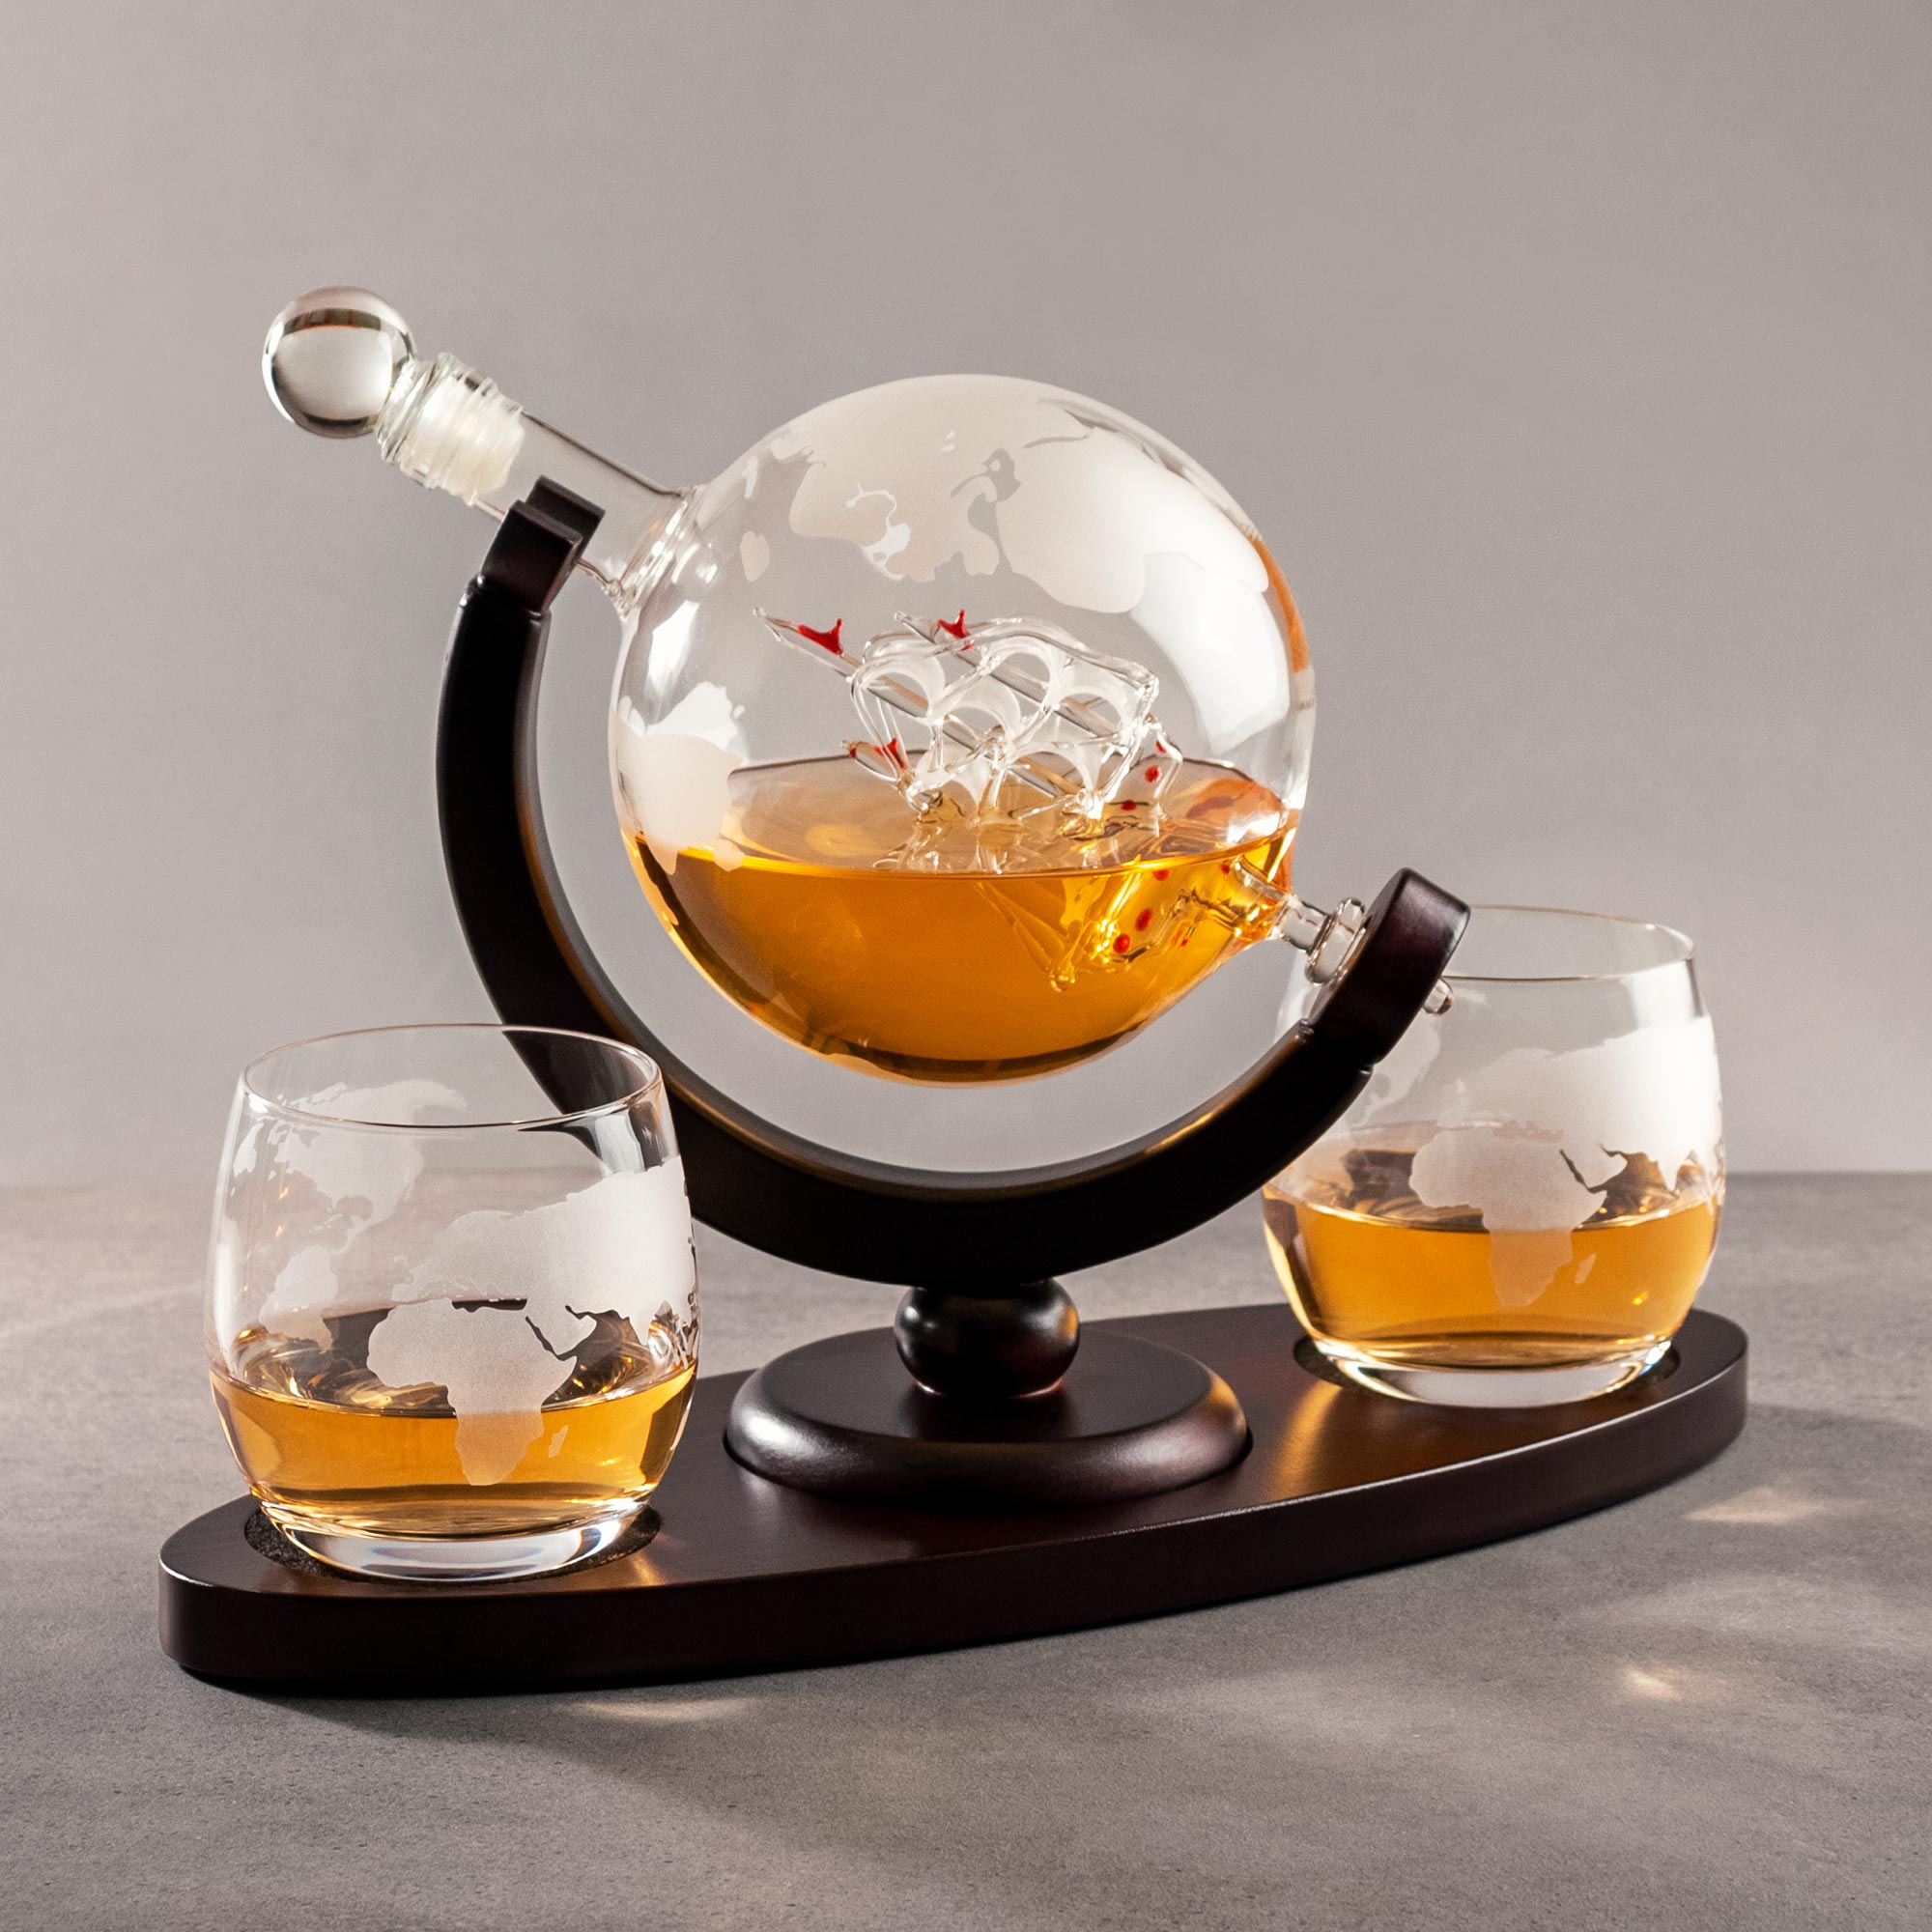 Whisky Set mit Globus Karaffe und 2 Gläsern - Segelschiff